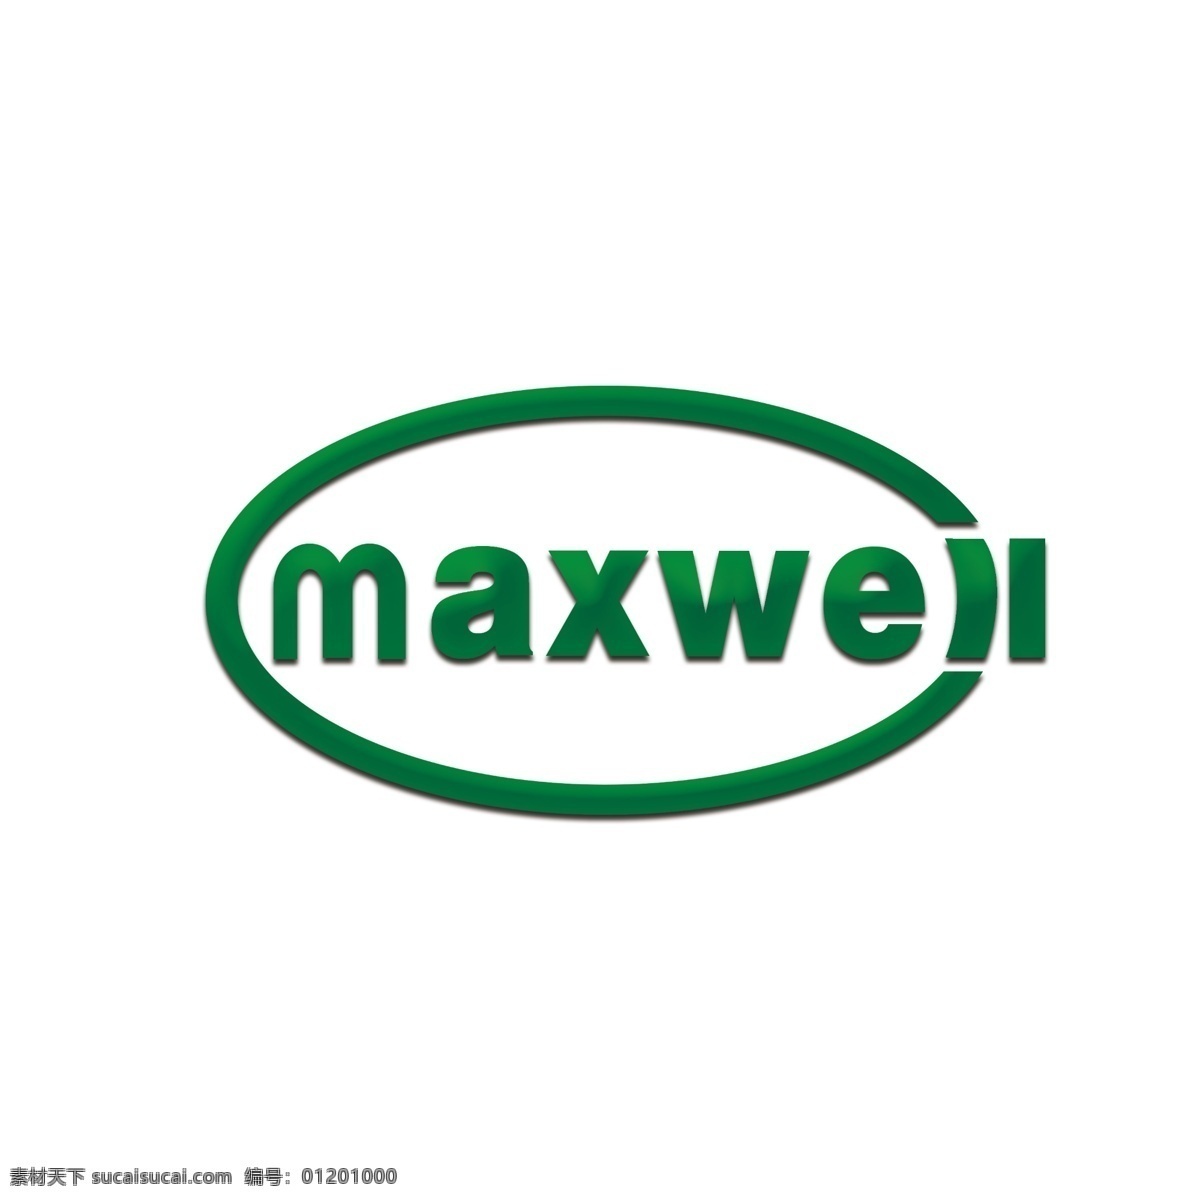 maxwell 深绿色 logo 简约 绿色 m a xw e l